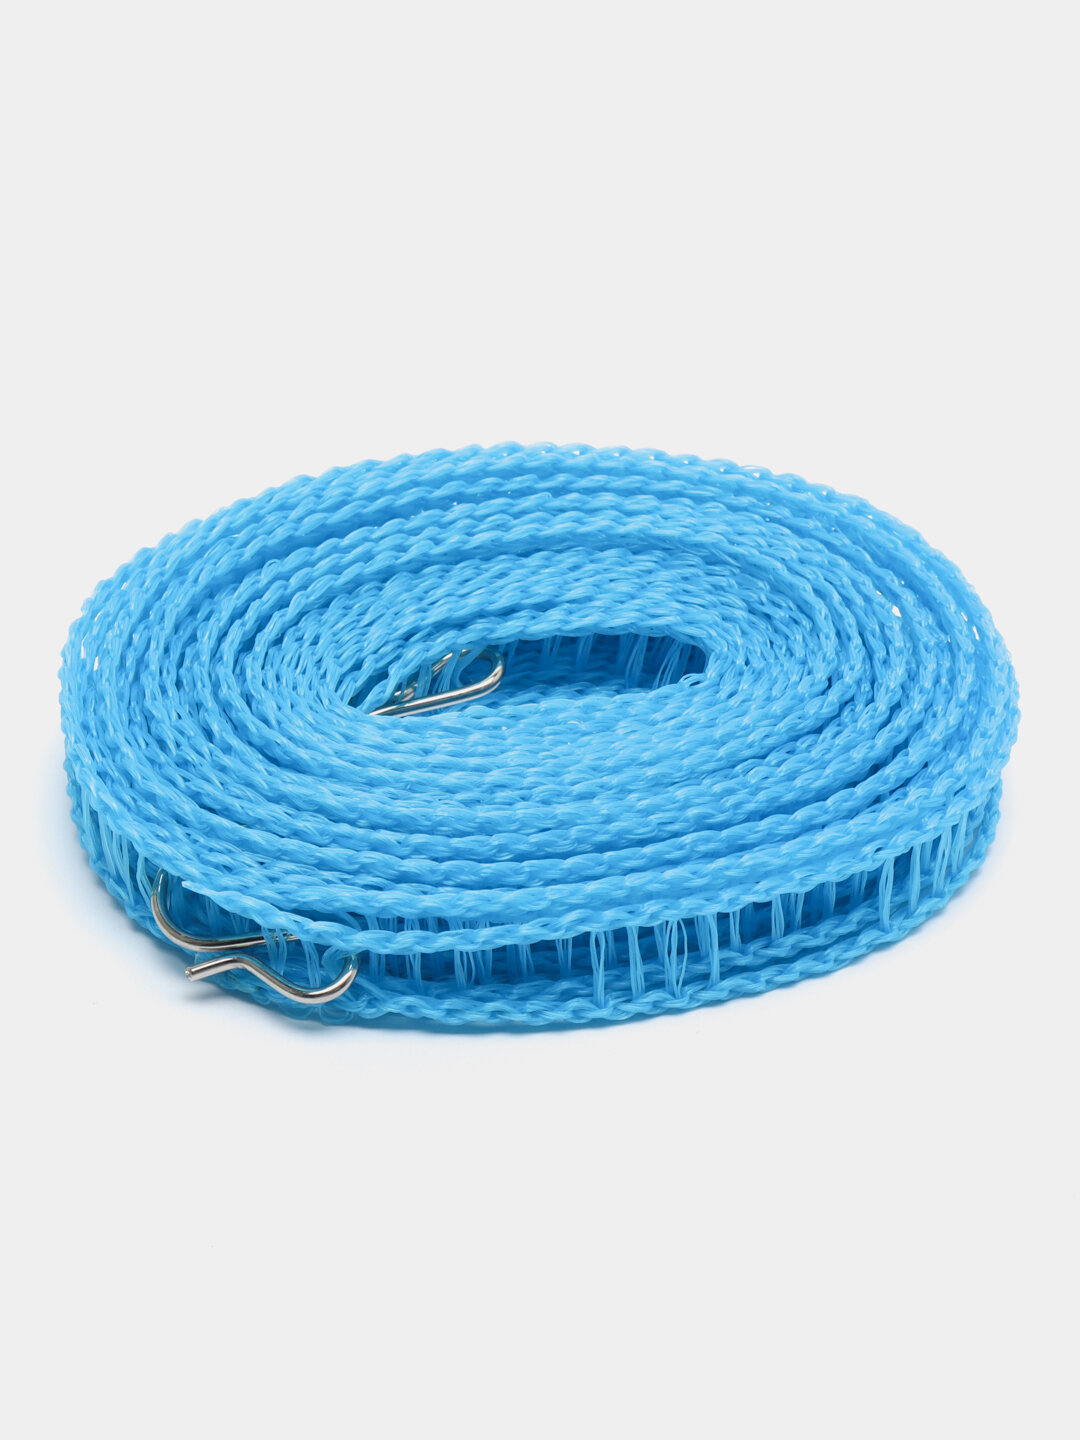 Веревка бельевая, 4 размера Длиннка 8м, Цвет Голубой